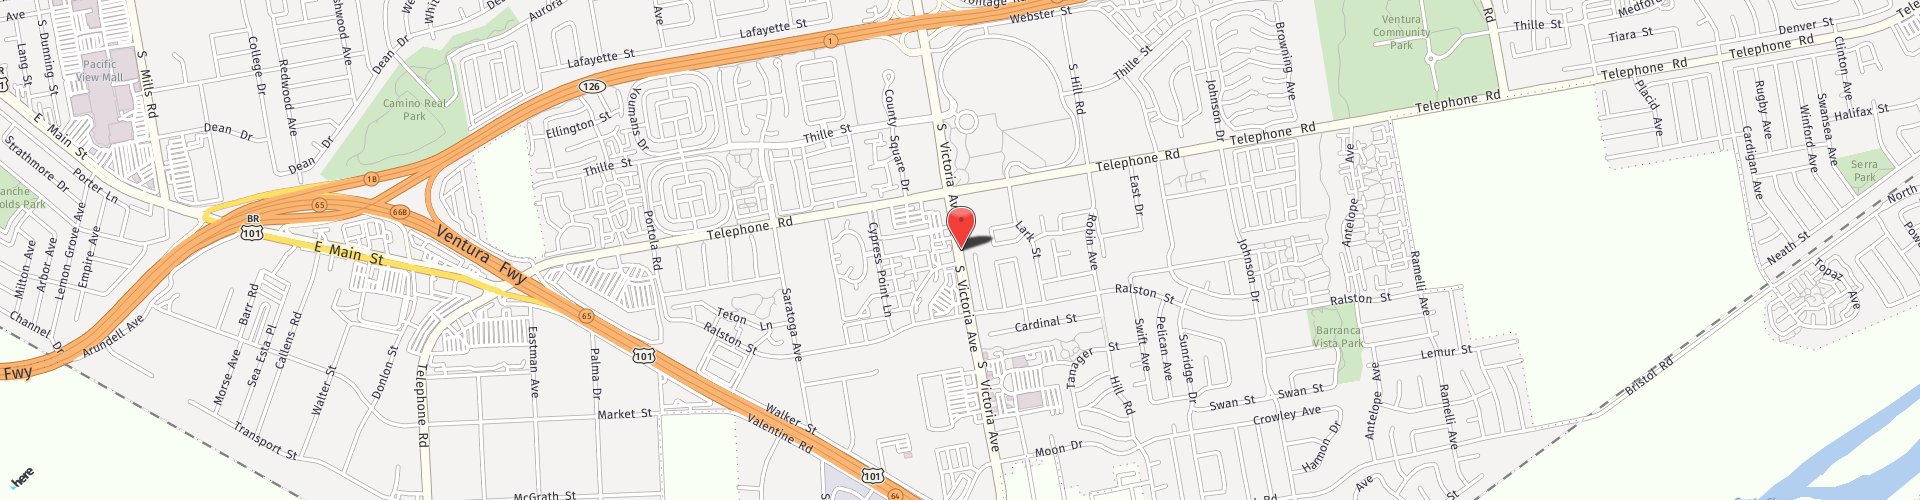 Location Map: 1280 S. Victoria Ave. Ventura, CA 93003-6504